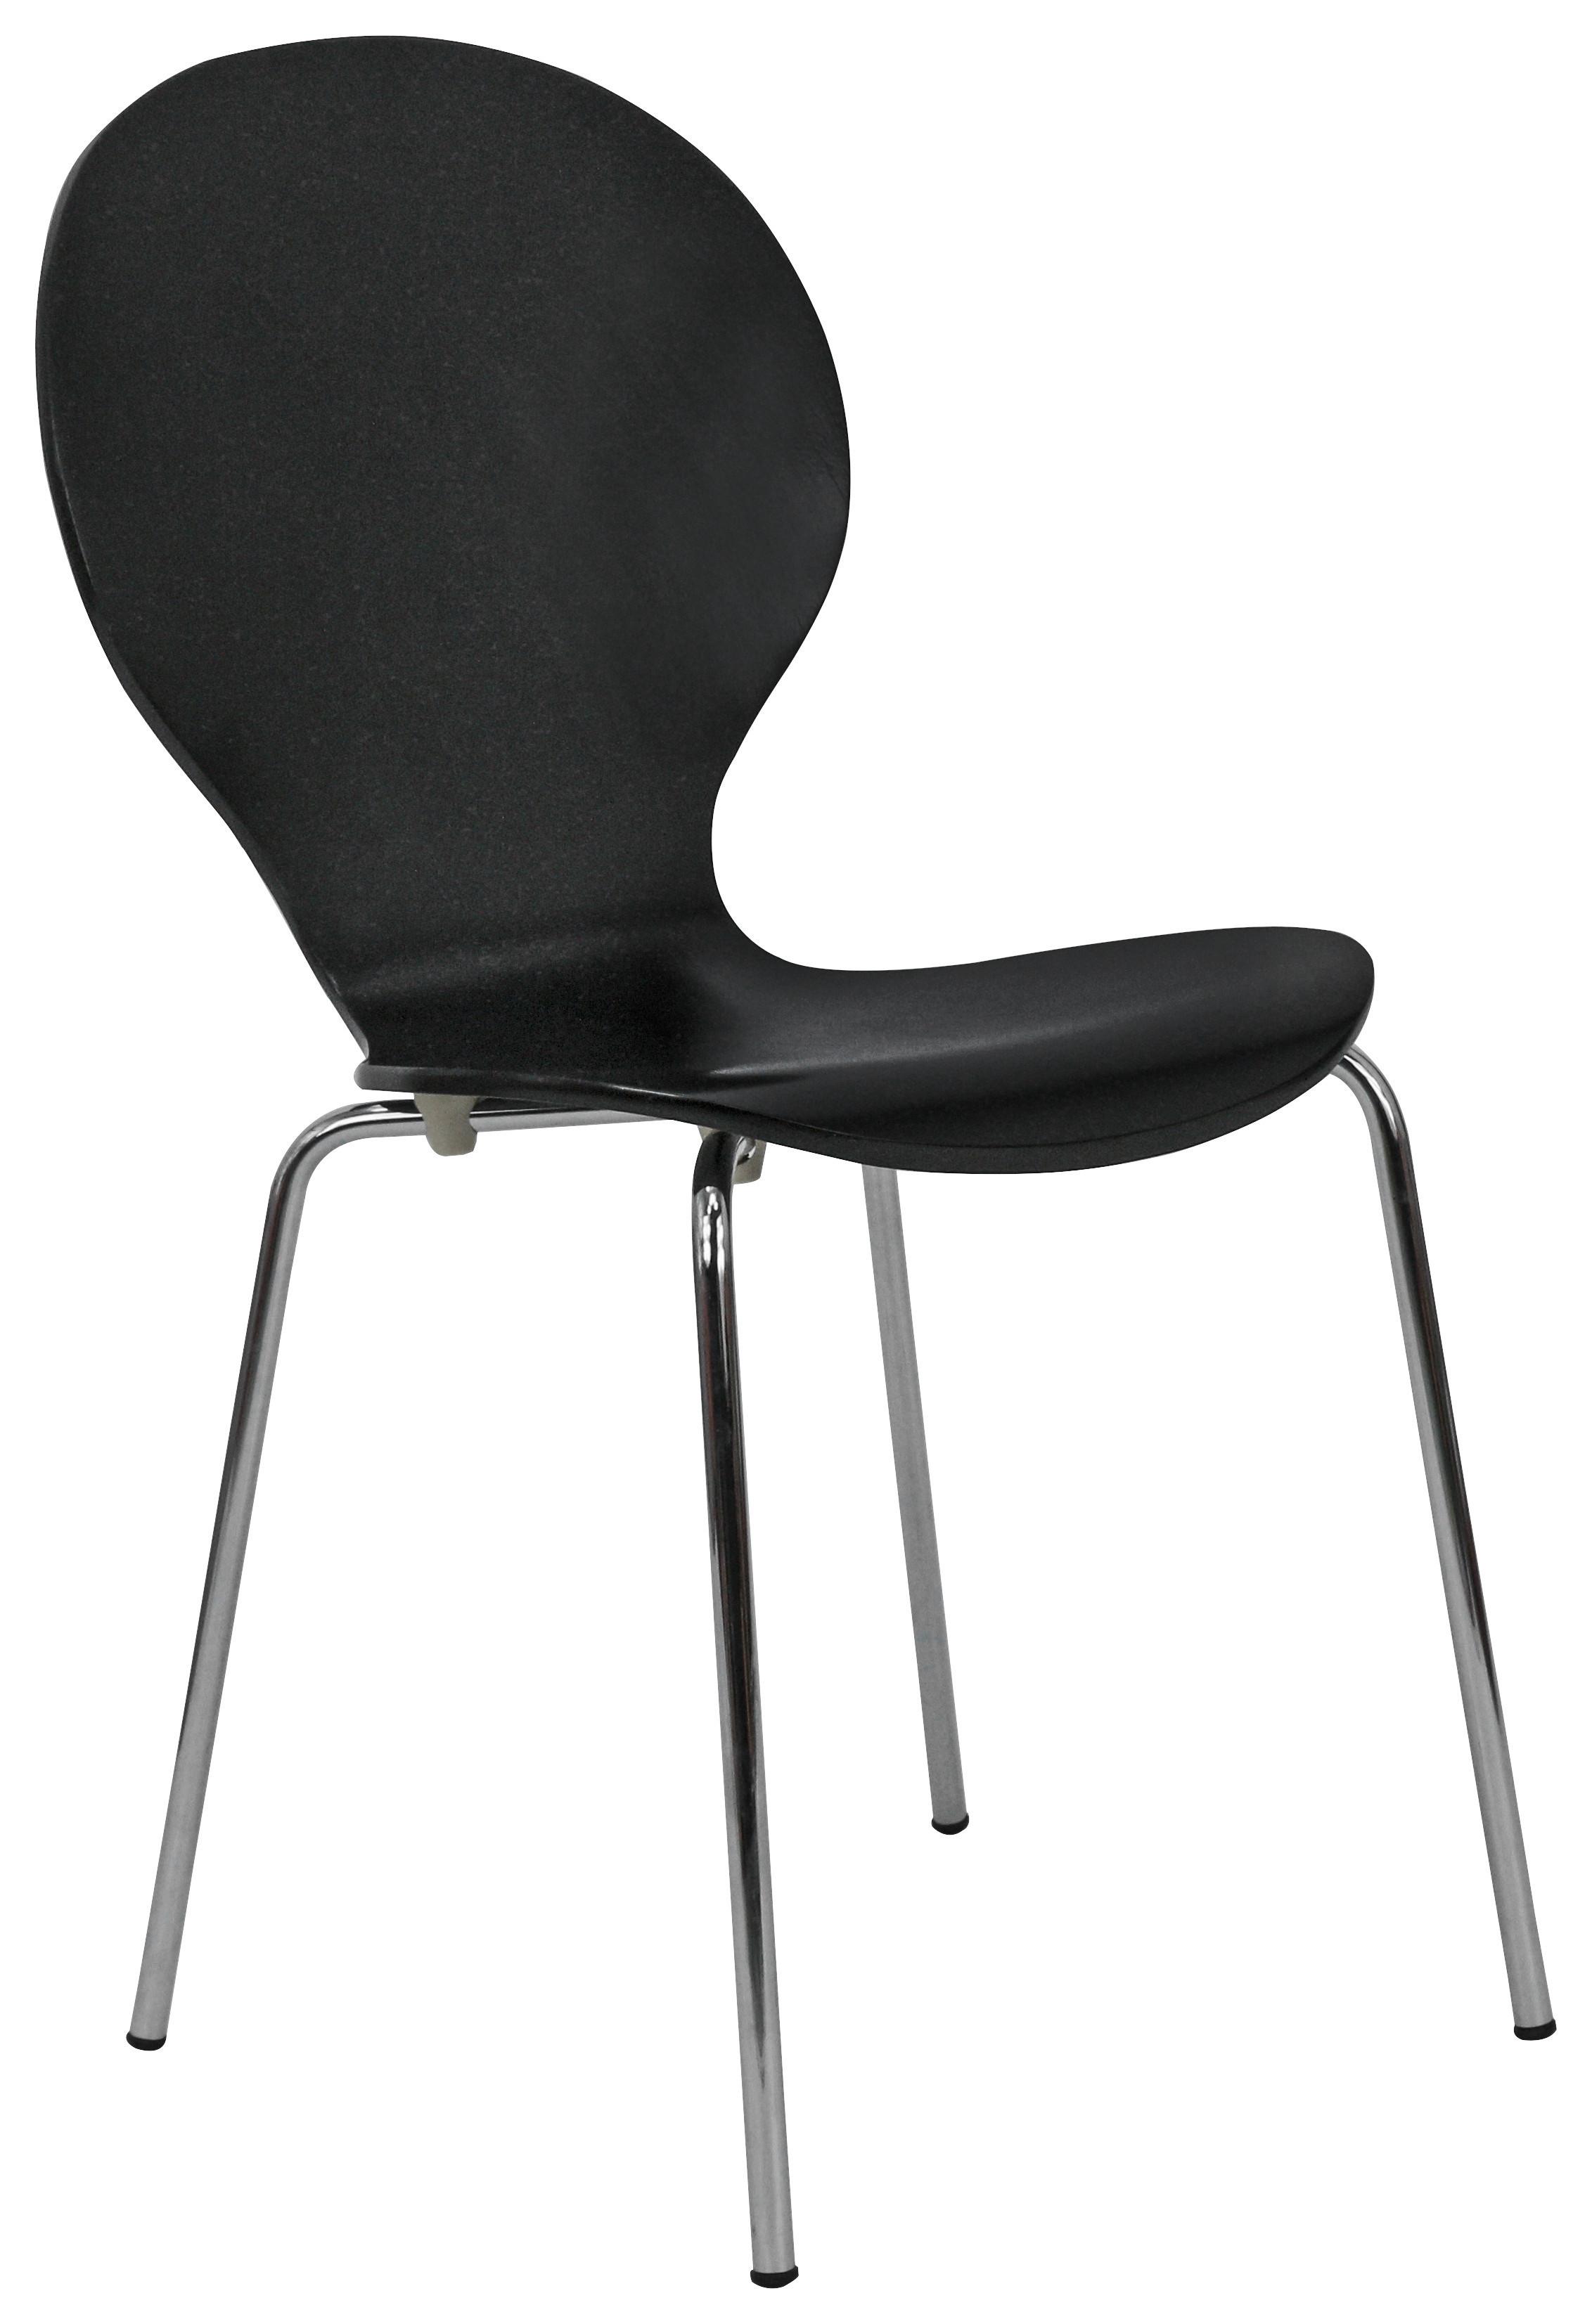 Stolica Ria - boje kroma/crna, Konventionell, drvo/metal (45/86/50cm)